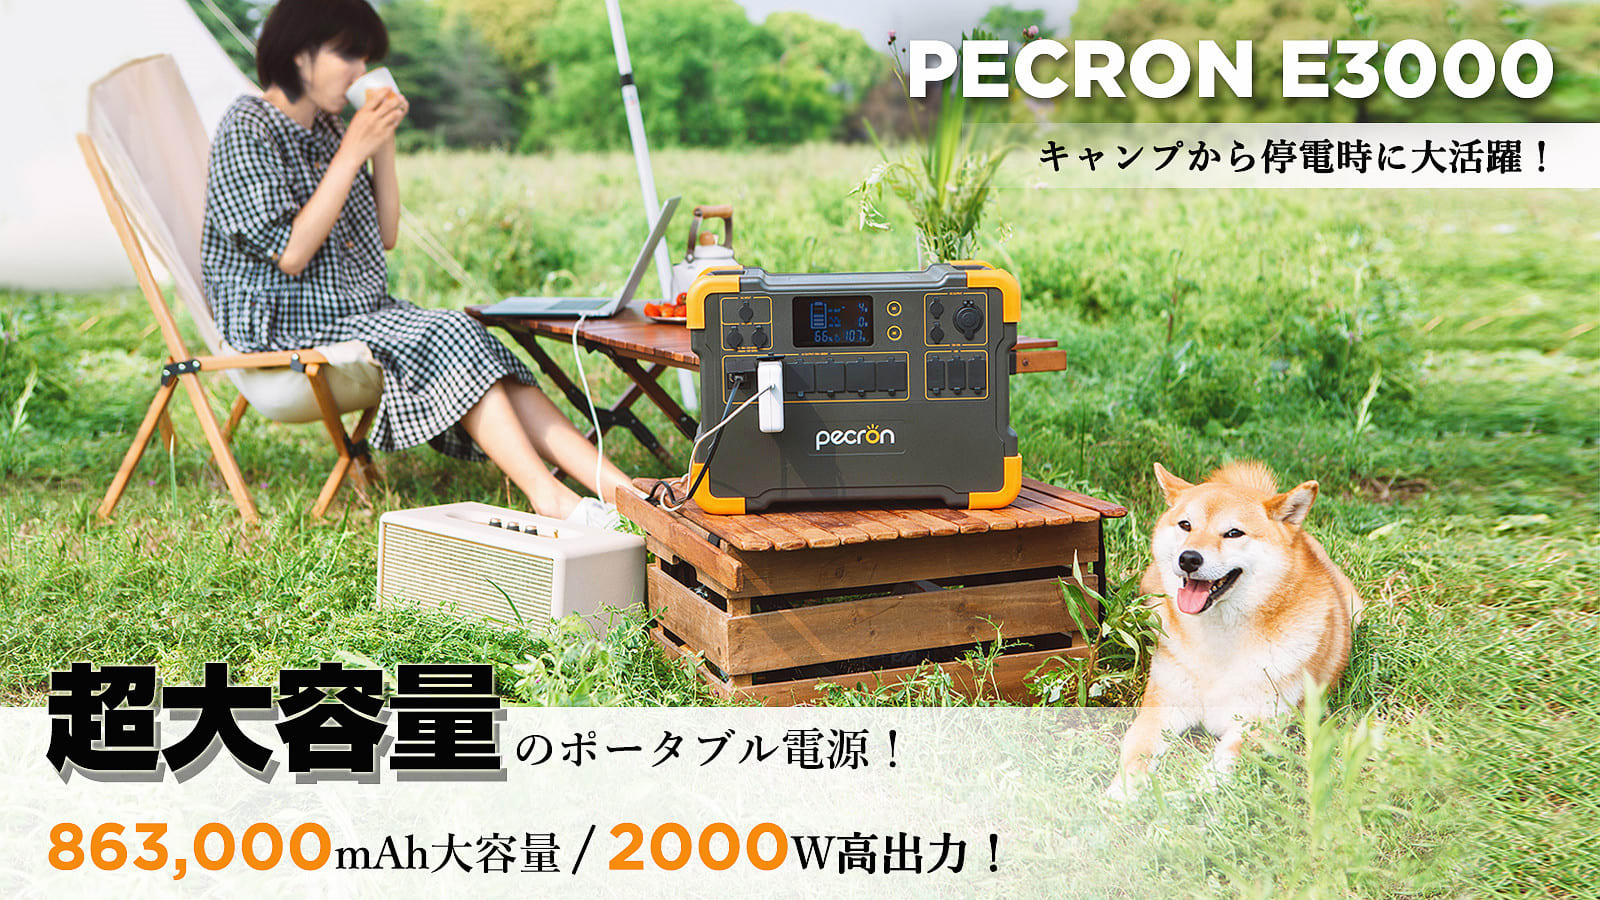 ポータブル電源「PECRON E3000」